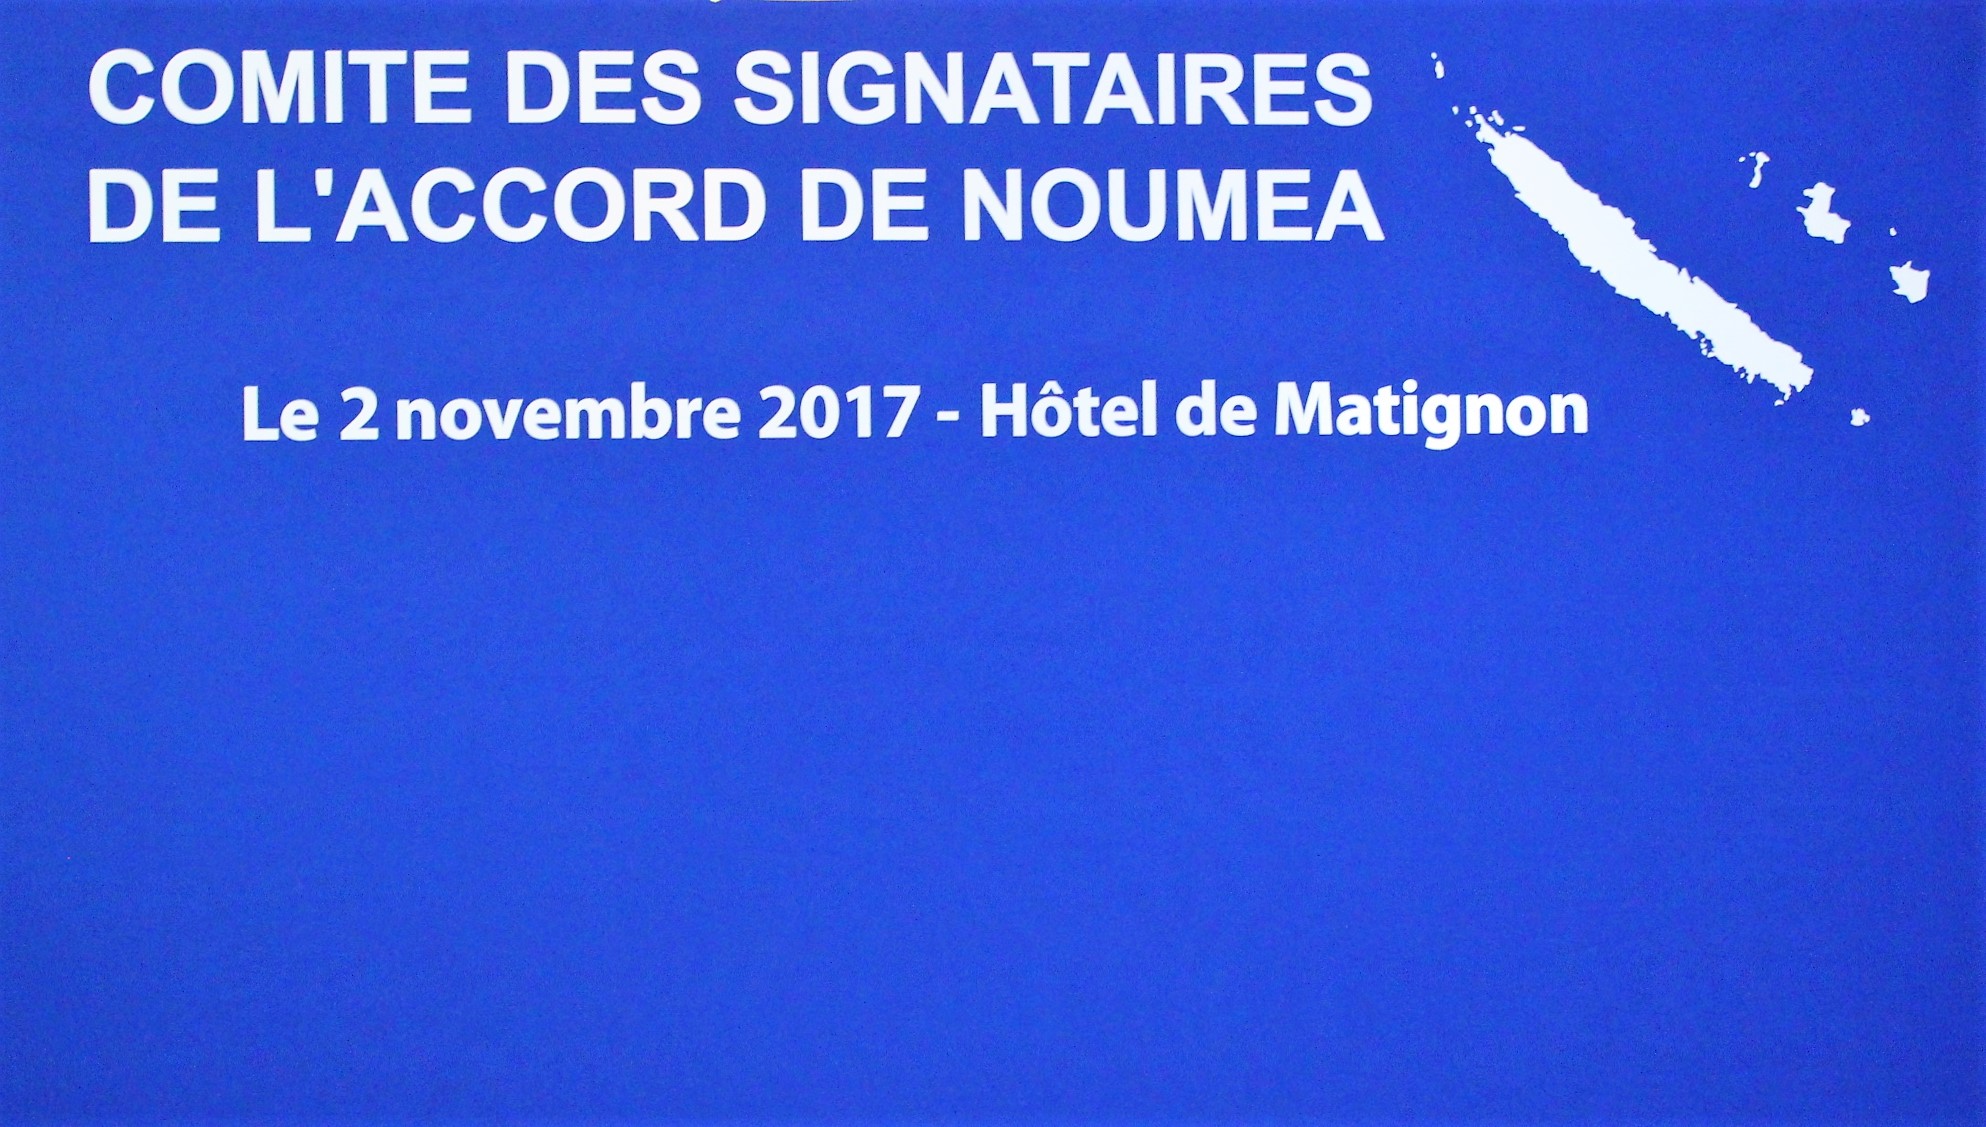 Accord de Nouméa : Les enjeux de ce 16ème Comité des Signataires